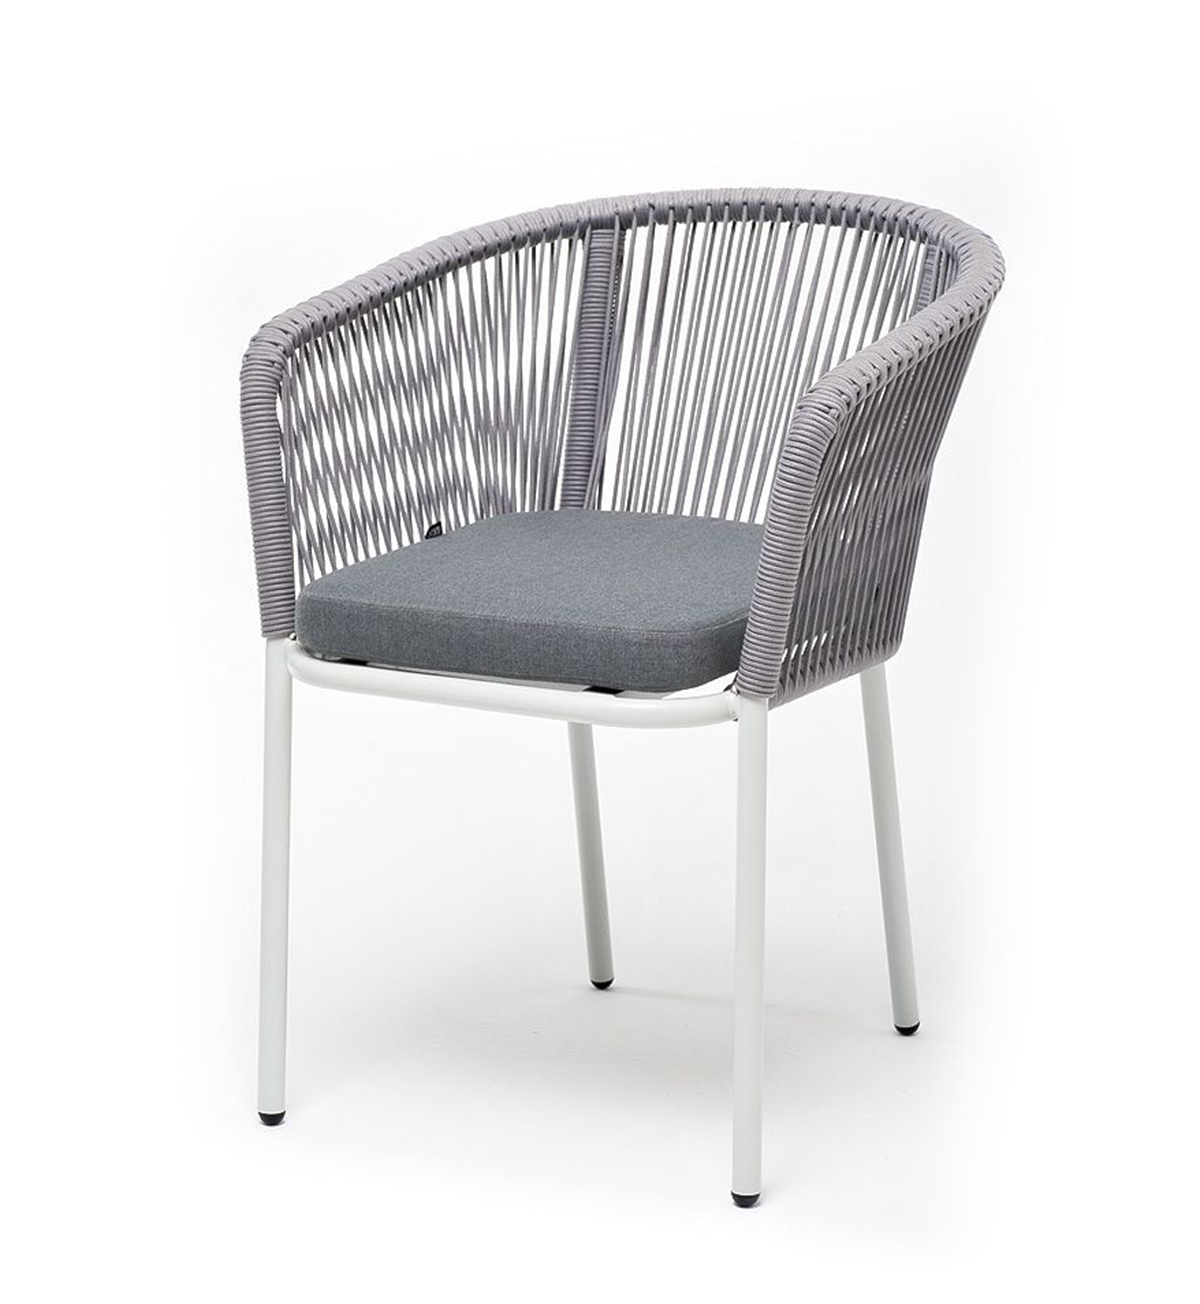 Плетеный стул из роупа Марсель бело-серый плетеный стул из роупа диего темно серый